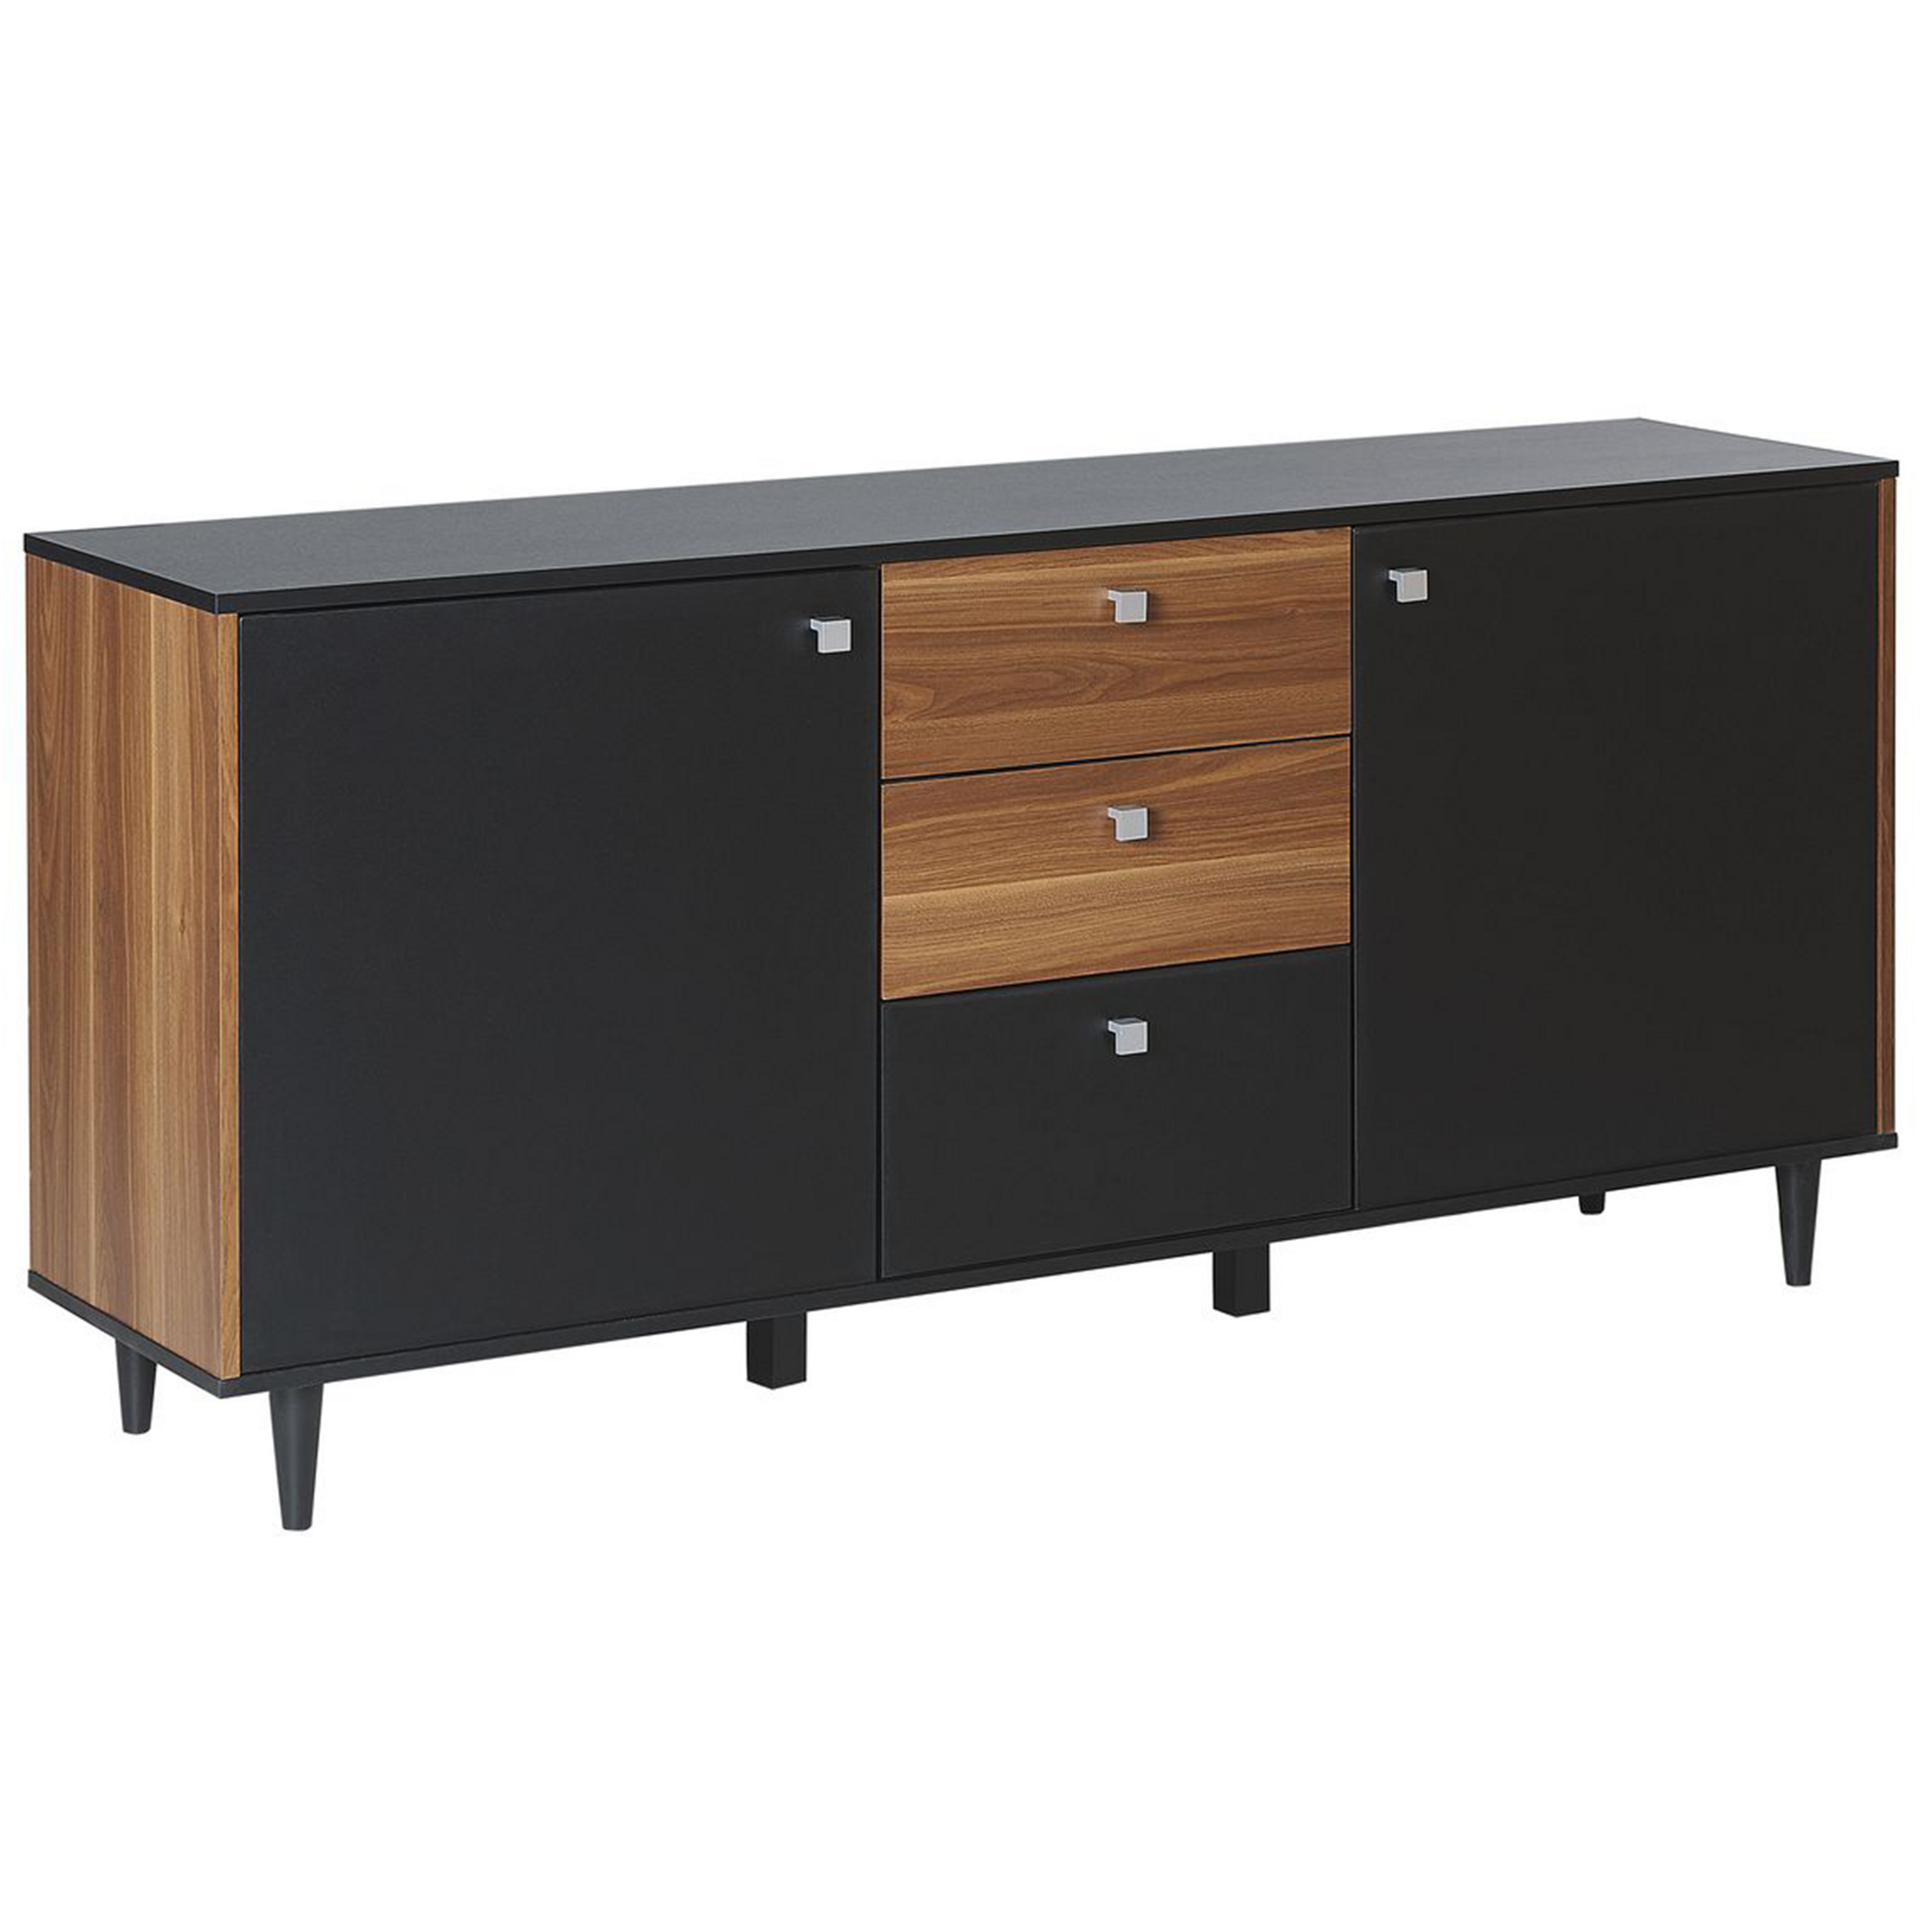 Beliani Sideboard Black with Dark Wood Particle Board Cabinet 3 Drawers 2 Doors Living Room Storage Furniture